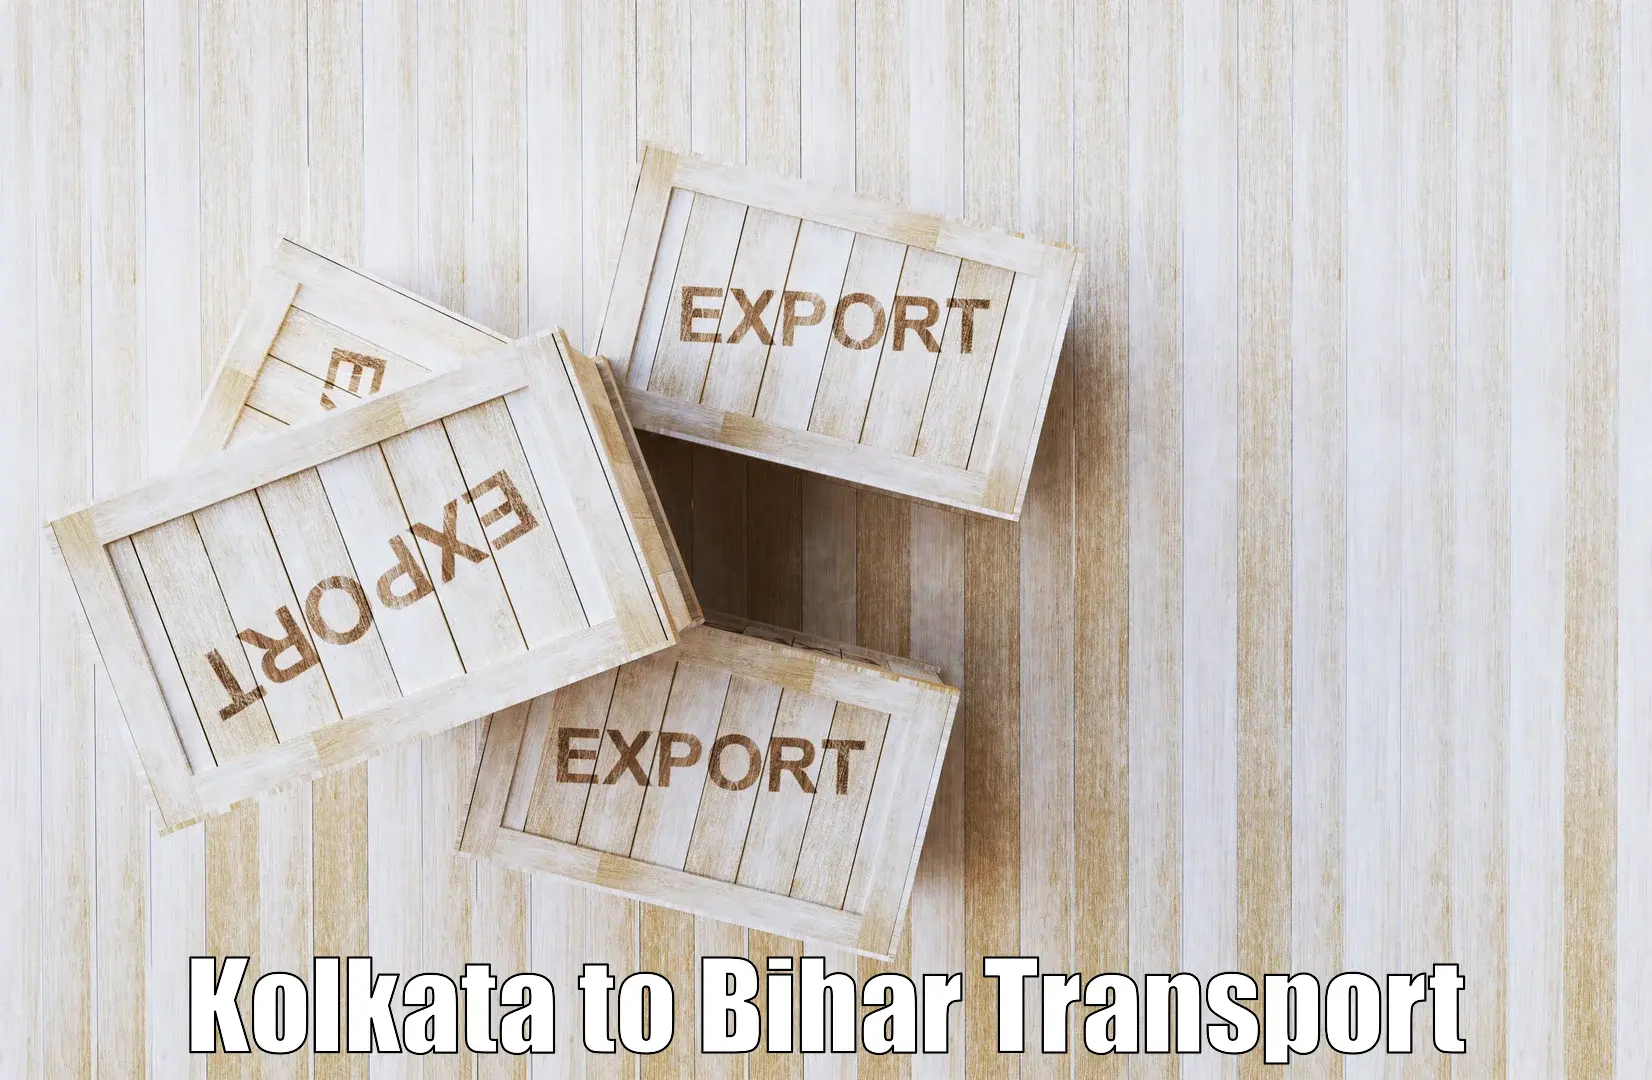 Pick up transport service in Kolkata to Birpur